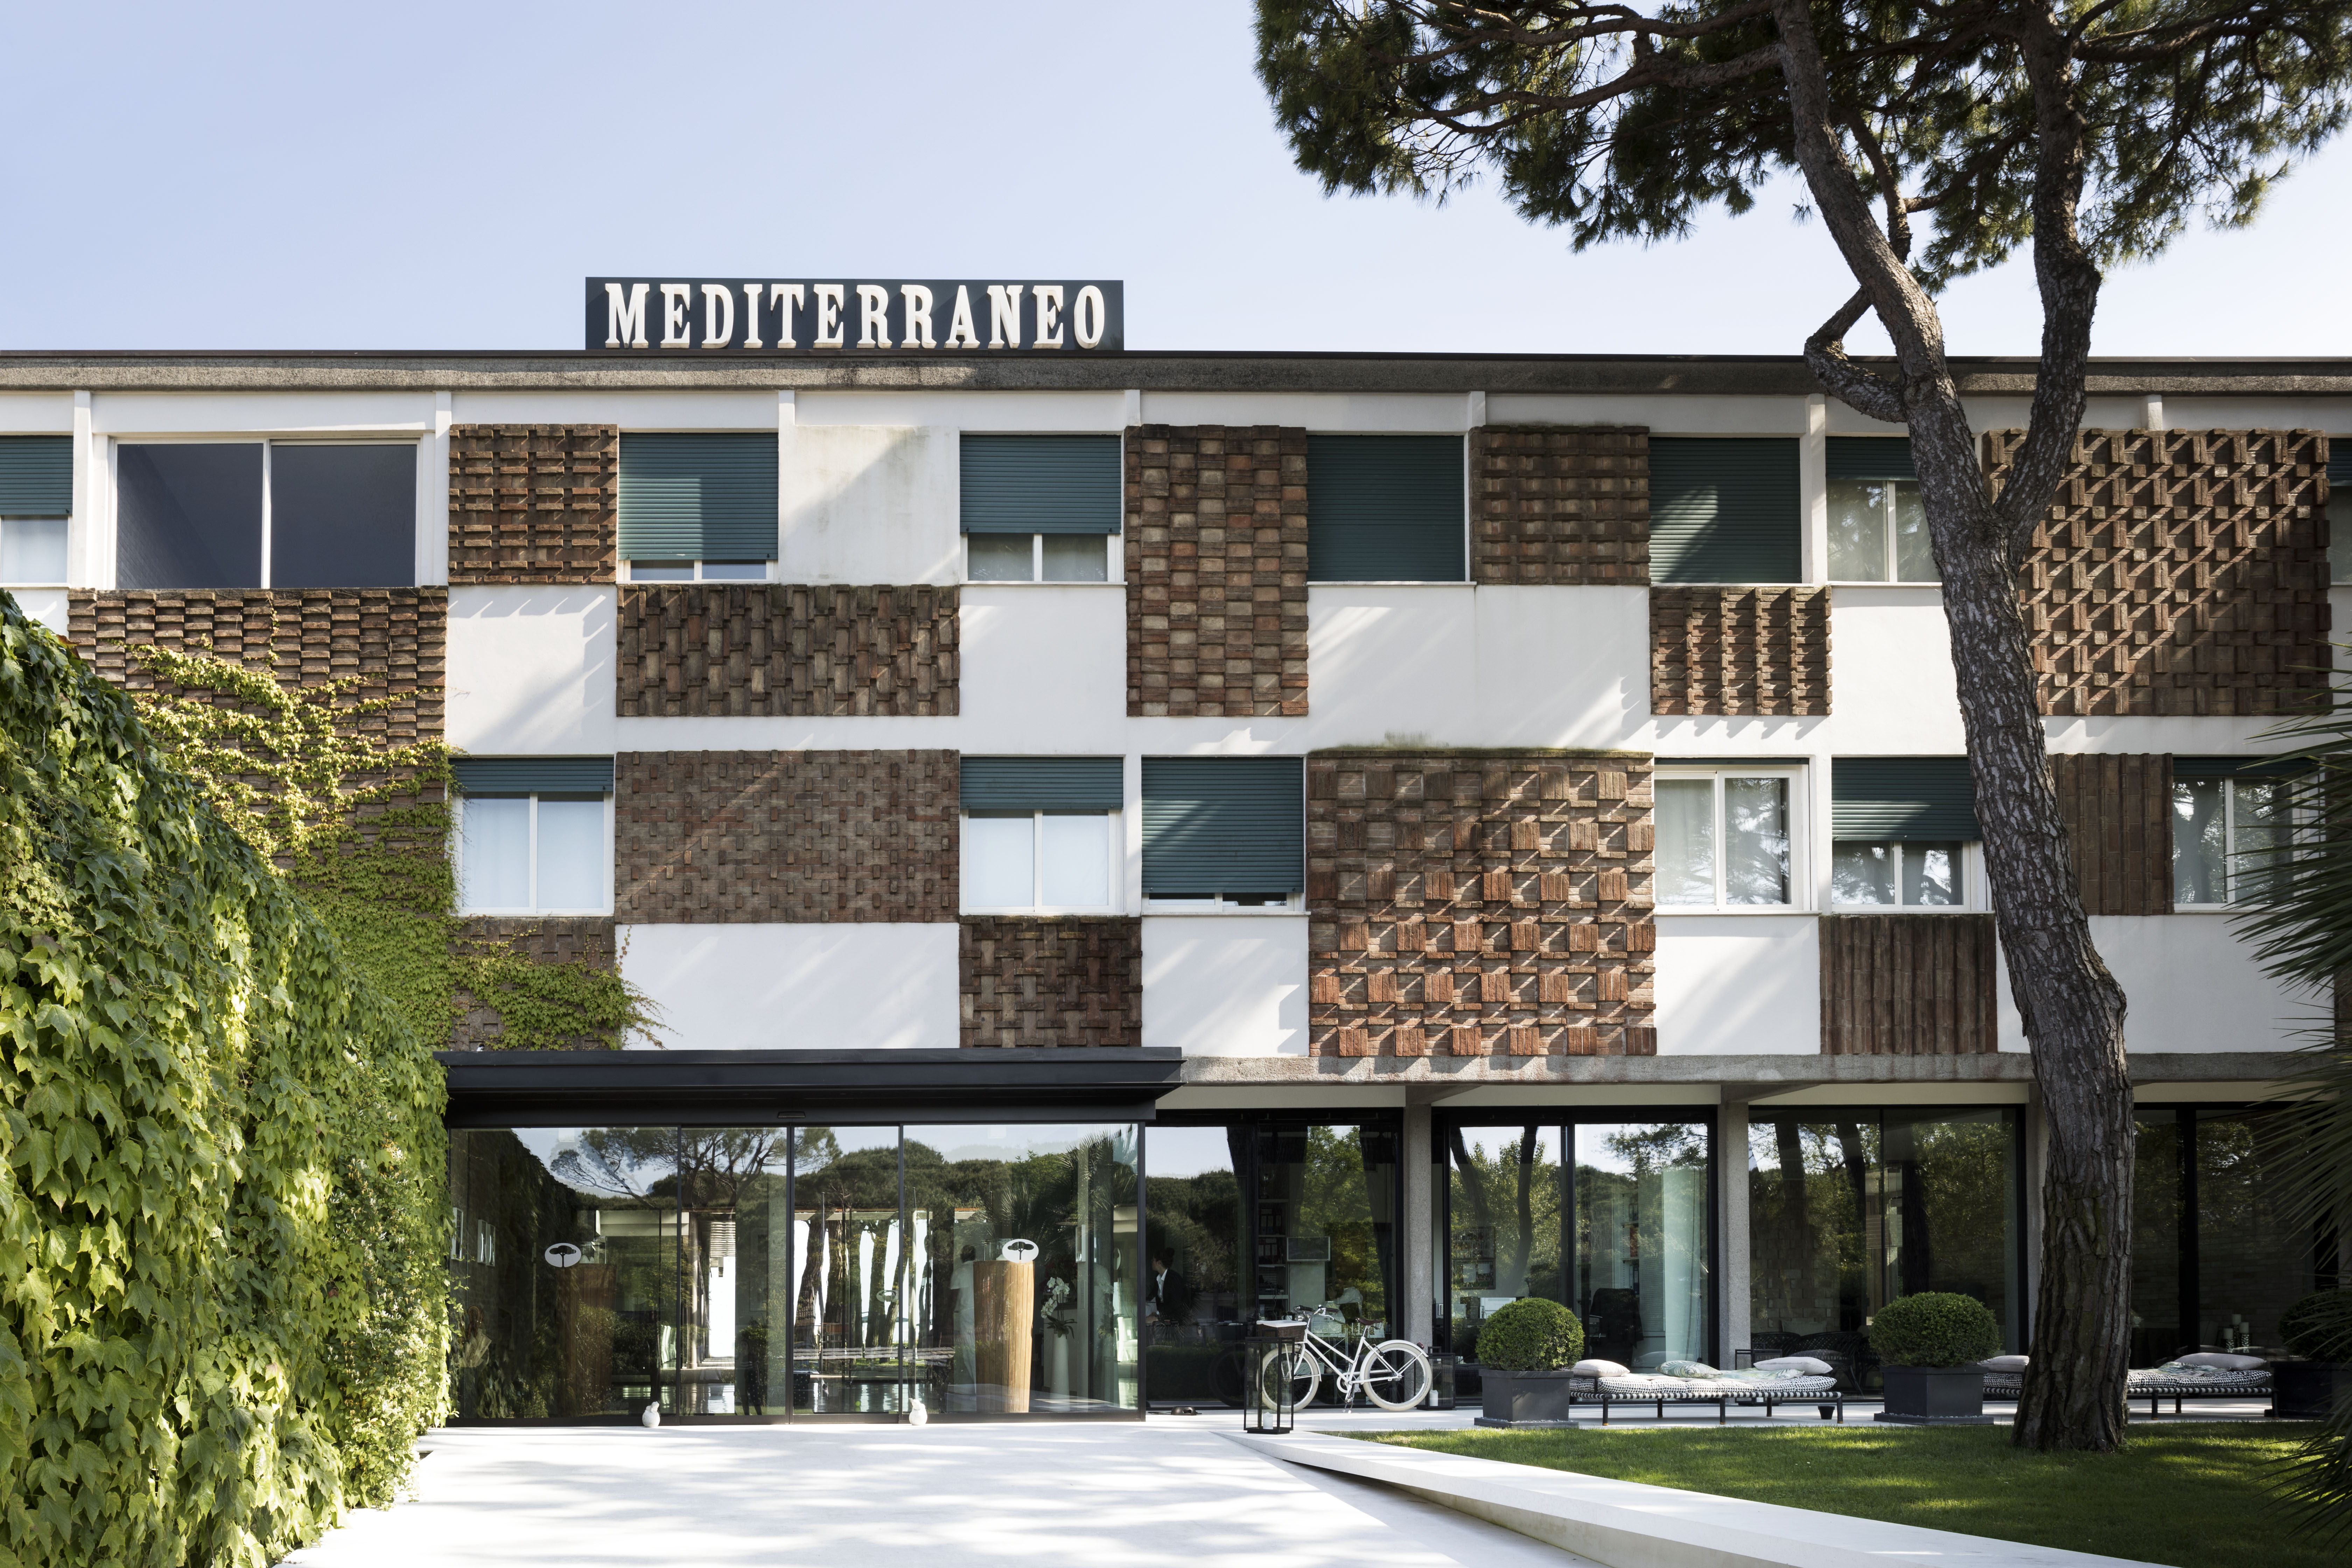 Hotel Mediterraneo, la facciata principale. Fotografia di Alberto Strada